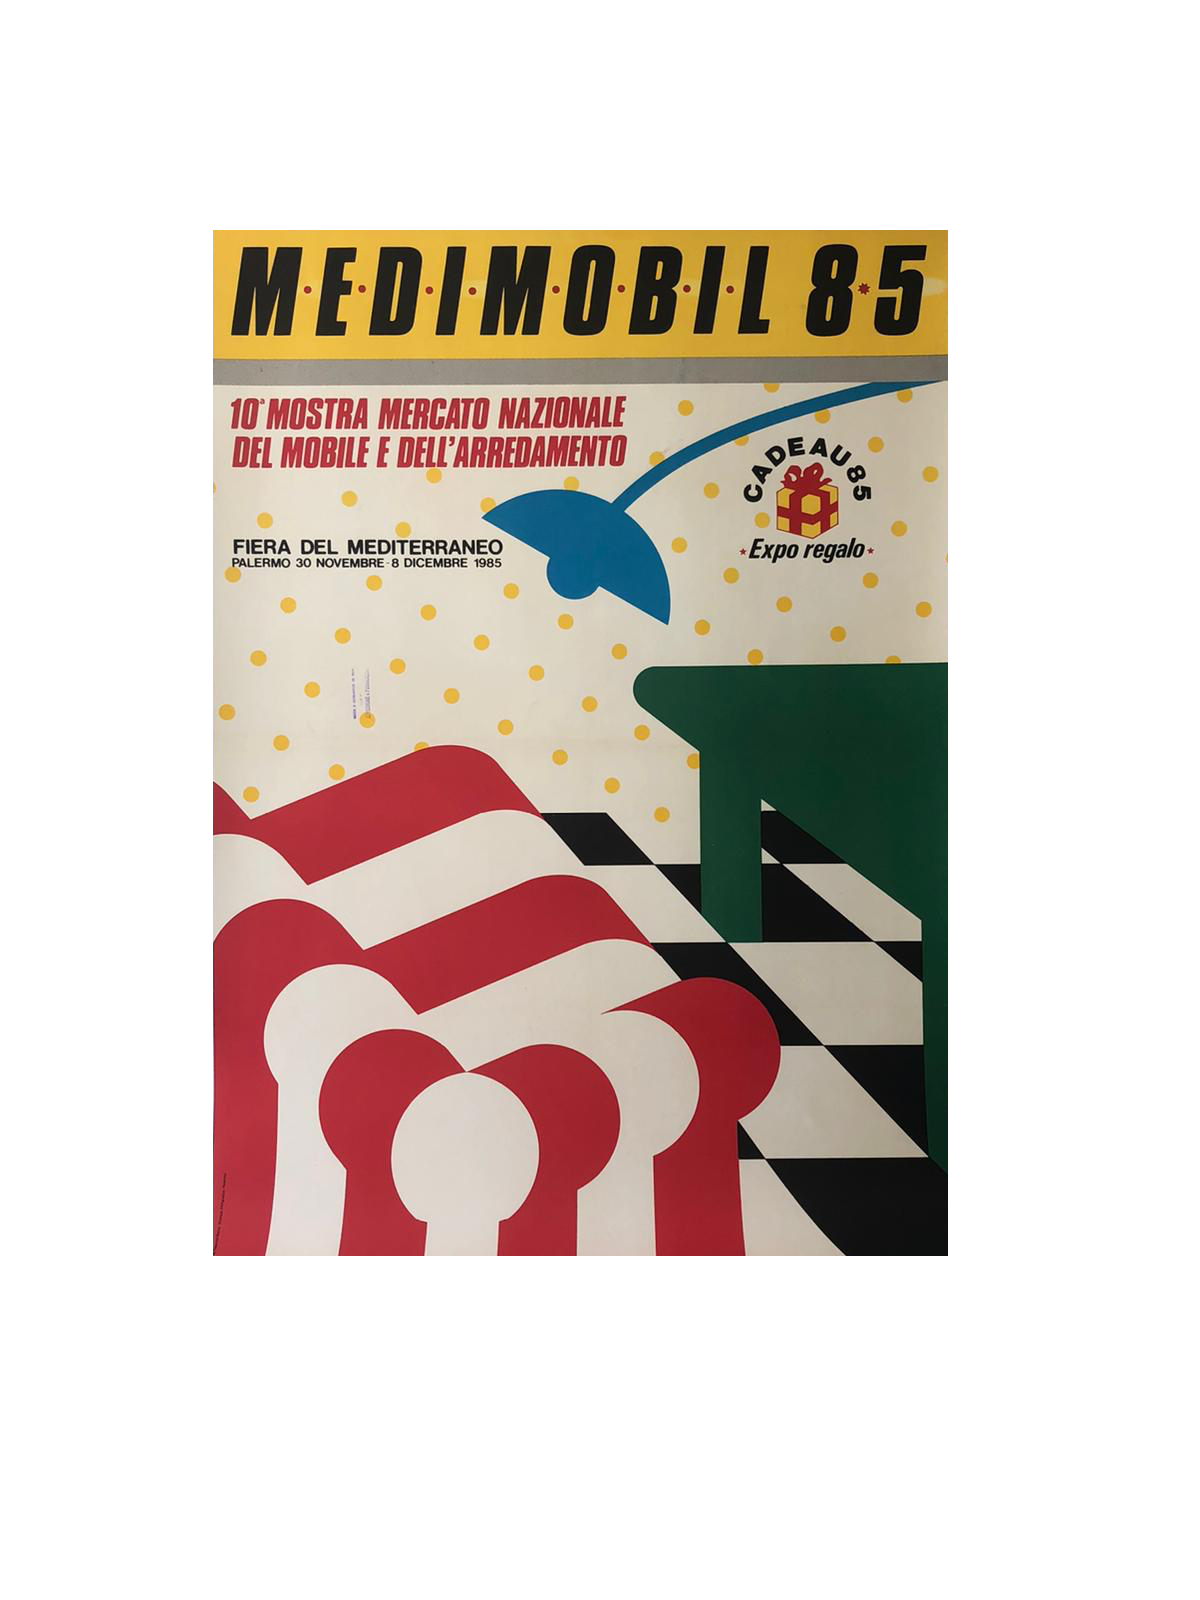 Medimobil "85